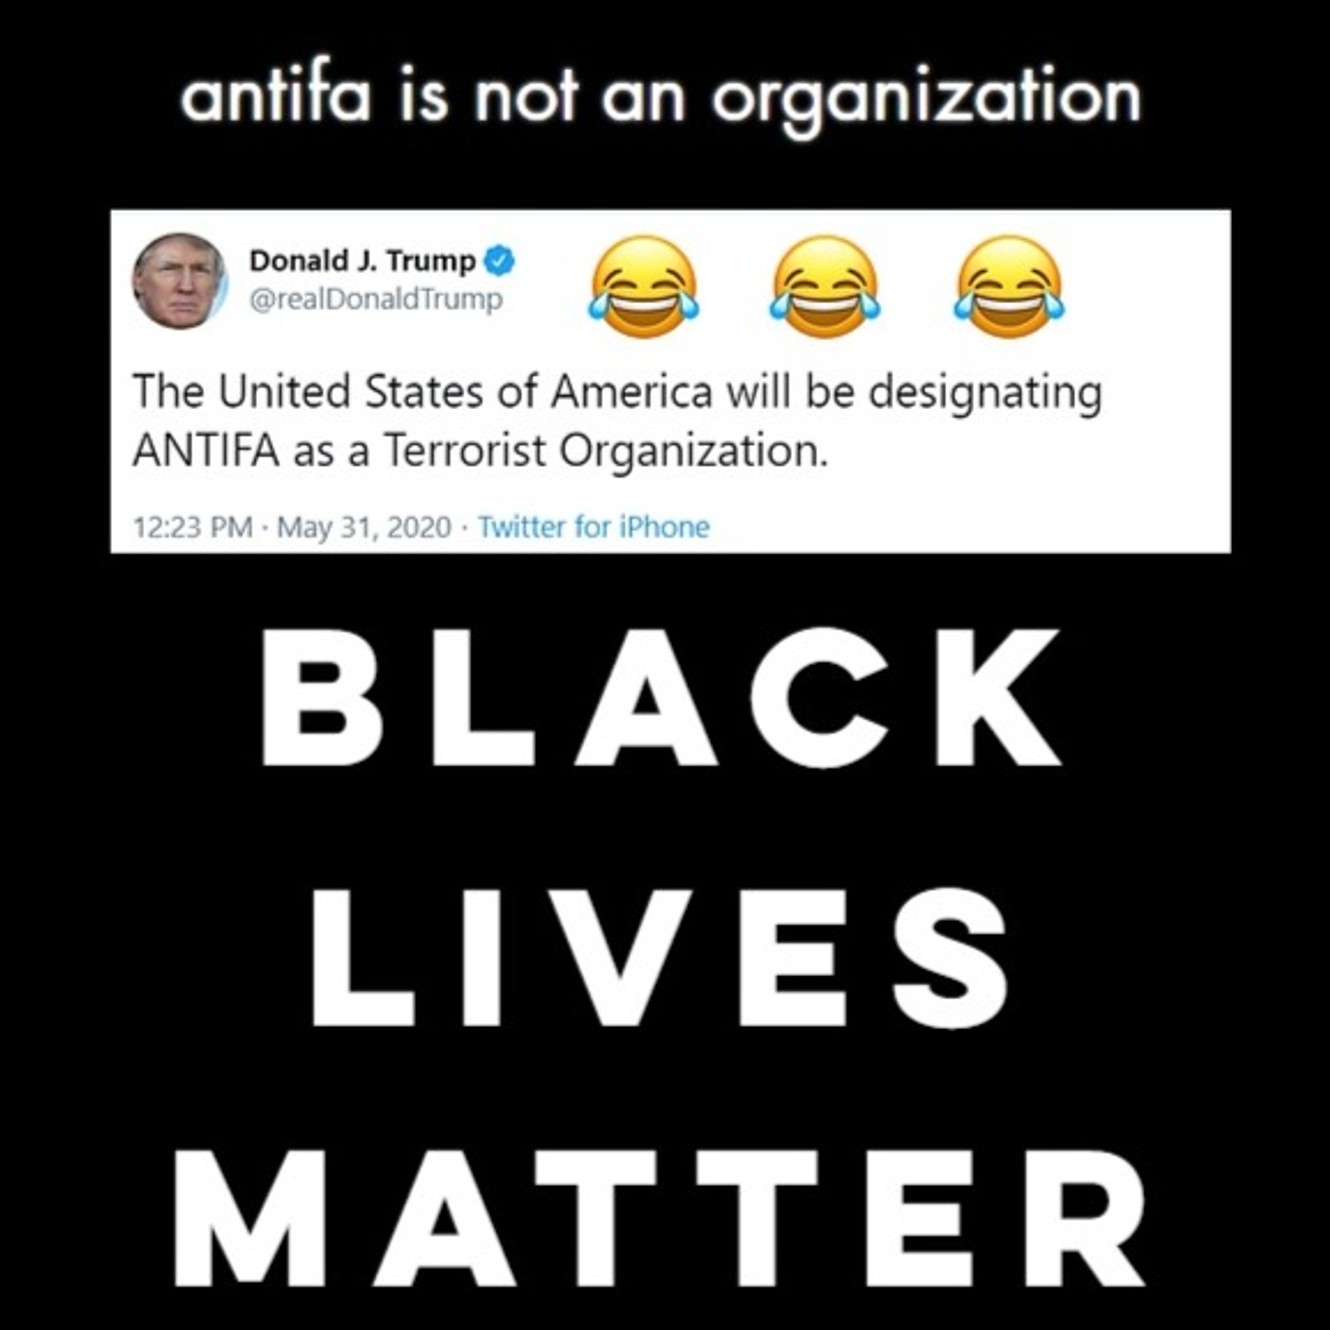 www.antifa.org